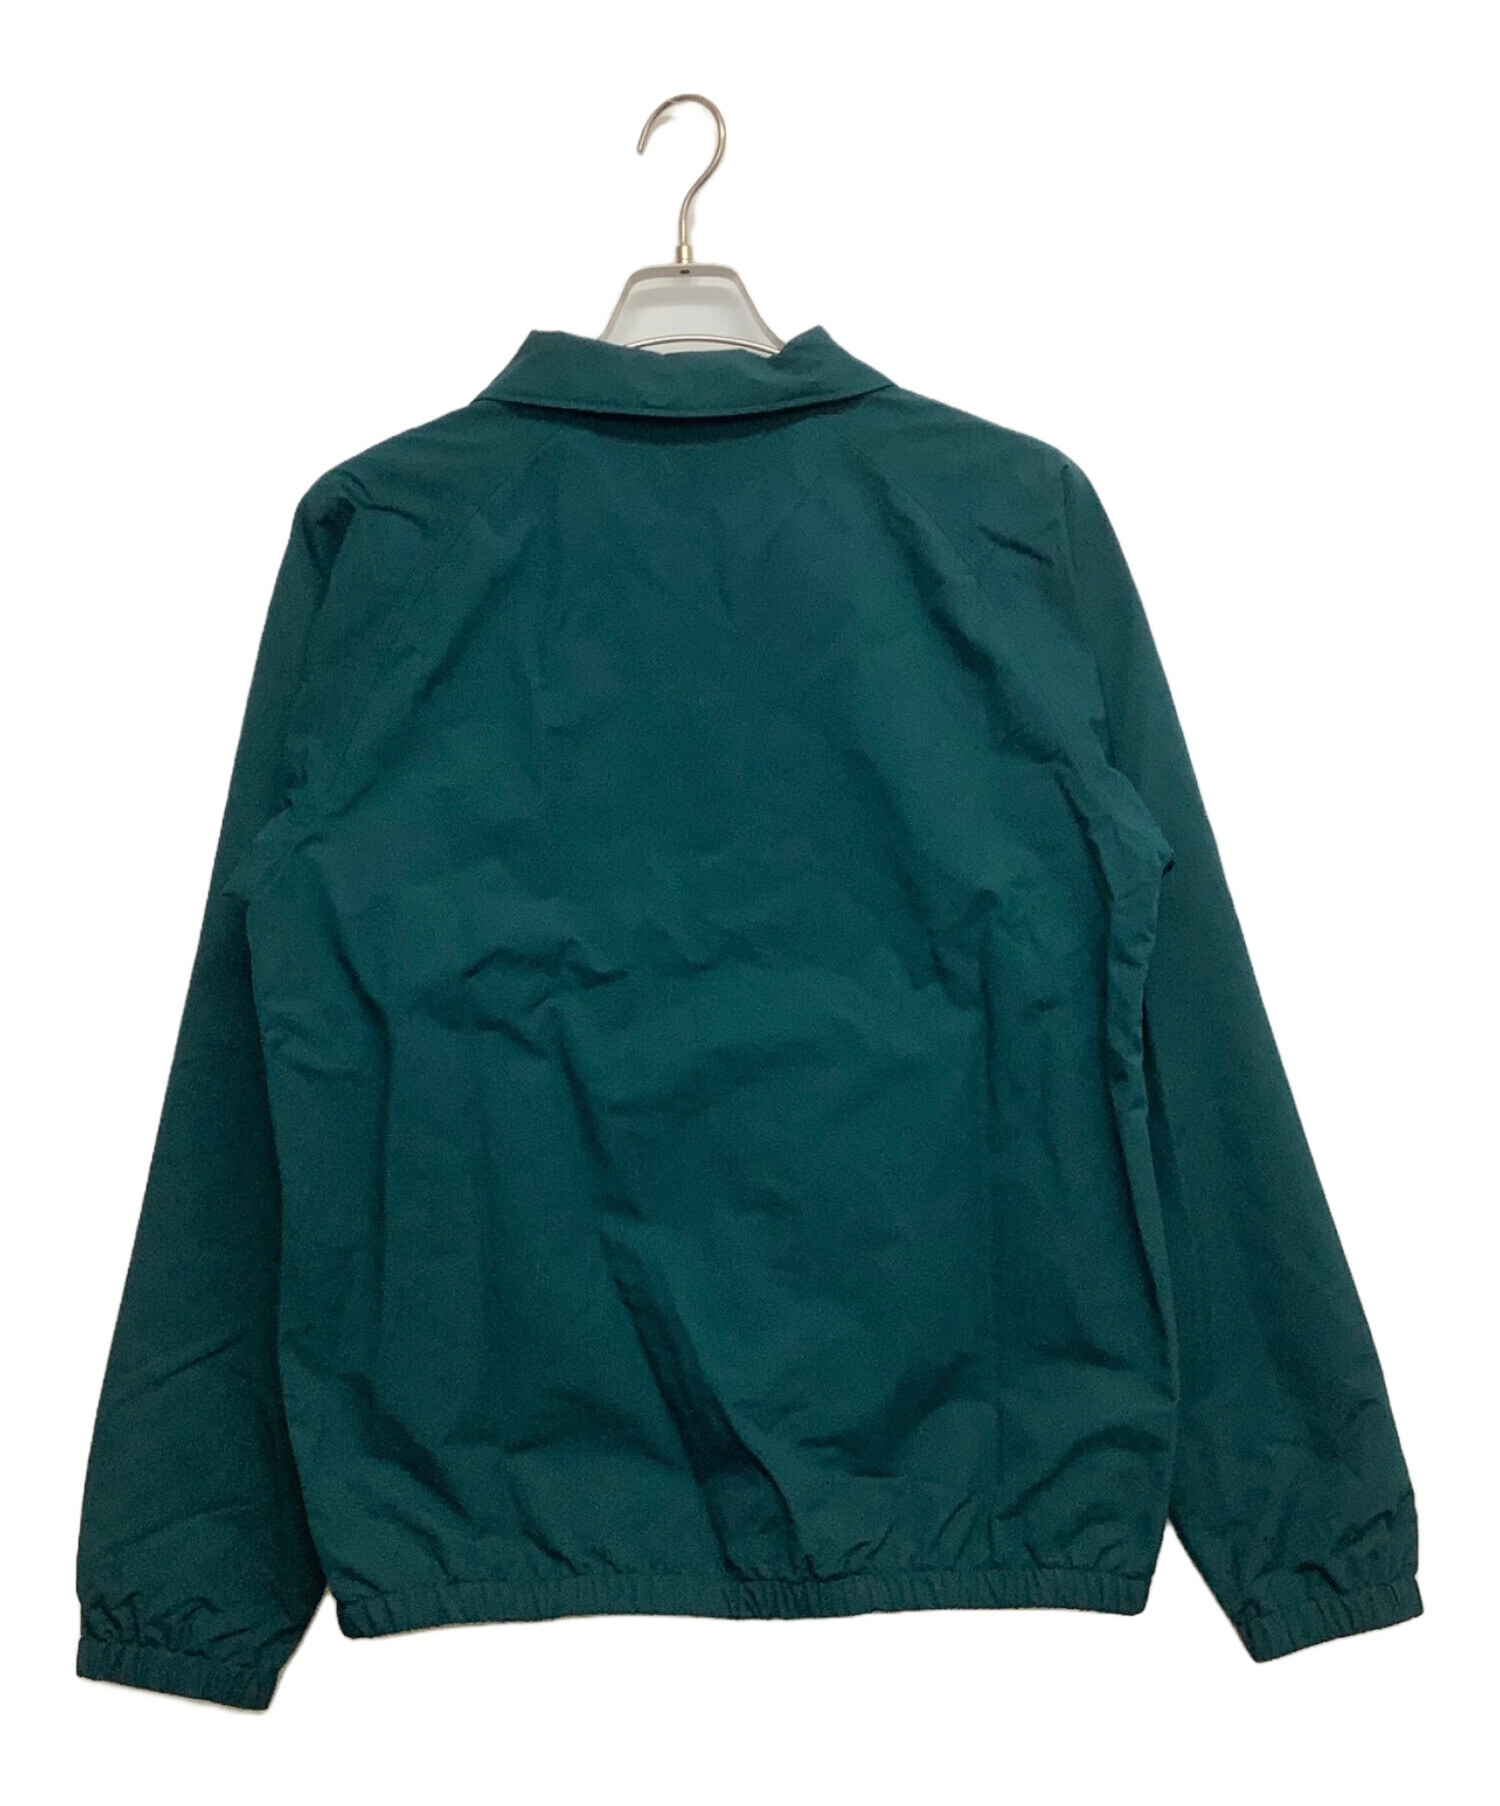 Patagonia (パタゴニア) バギーズジャケット グリーン サイズ:S